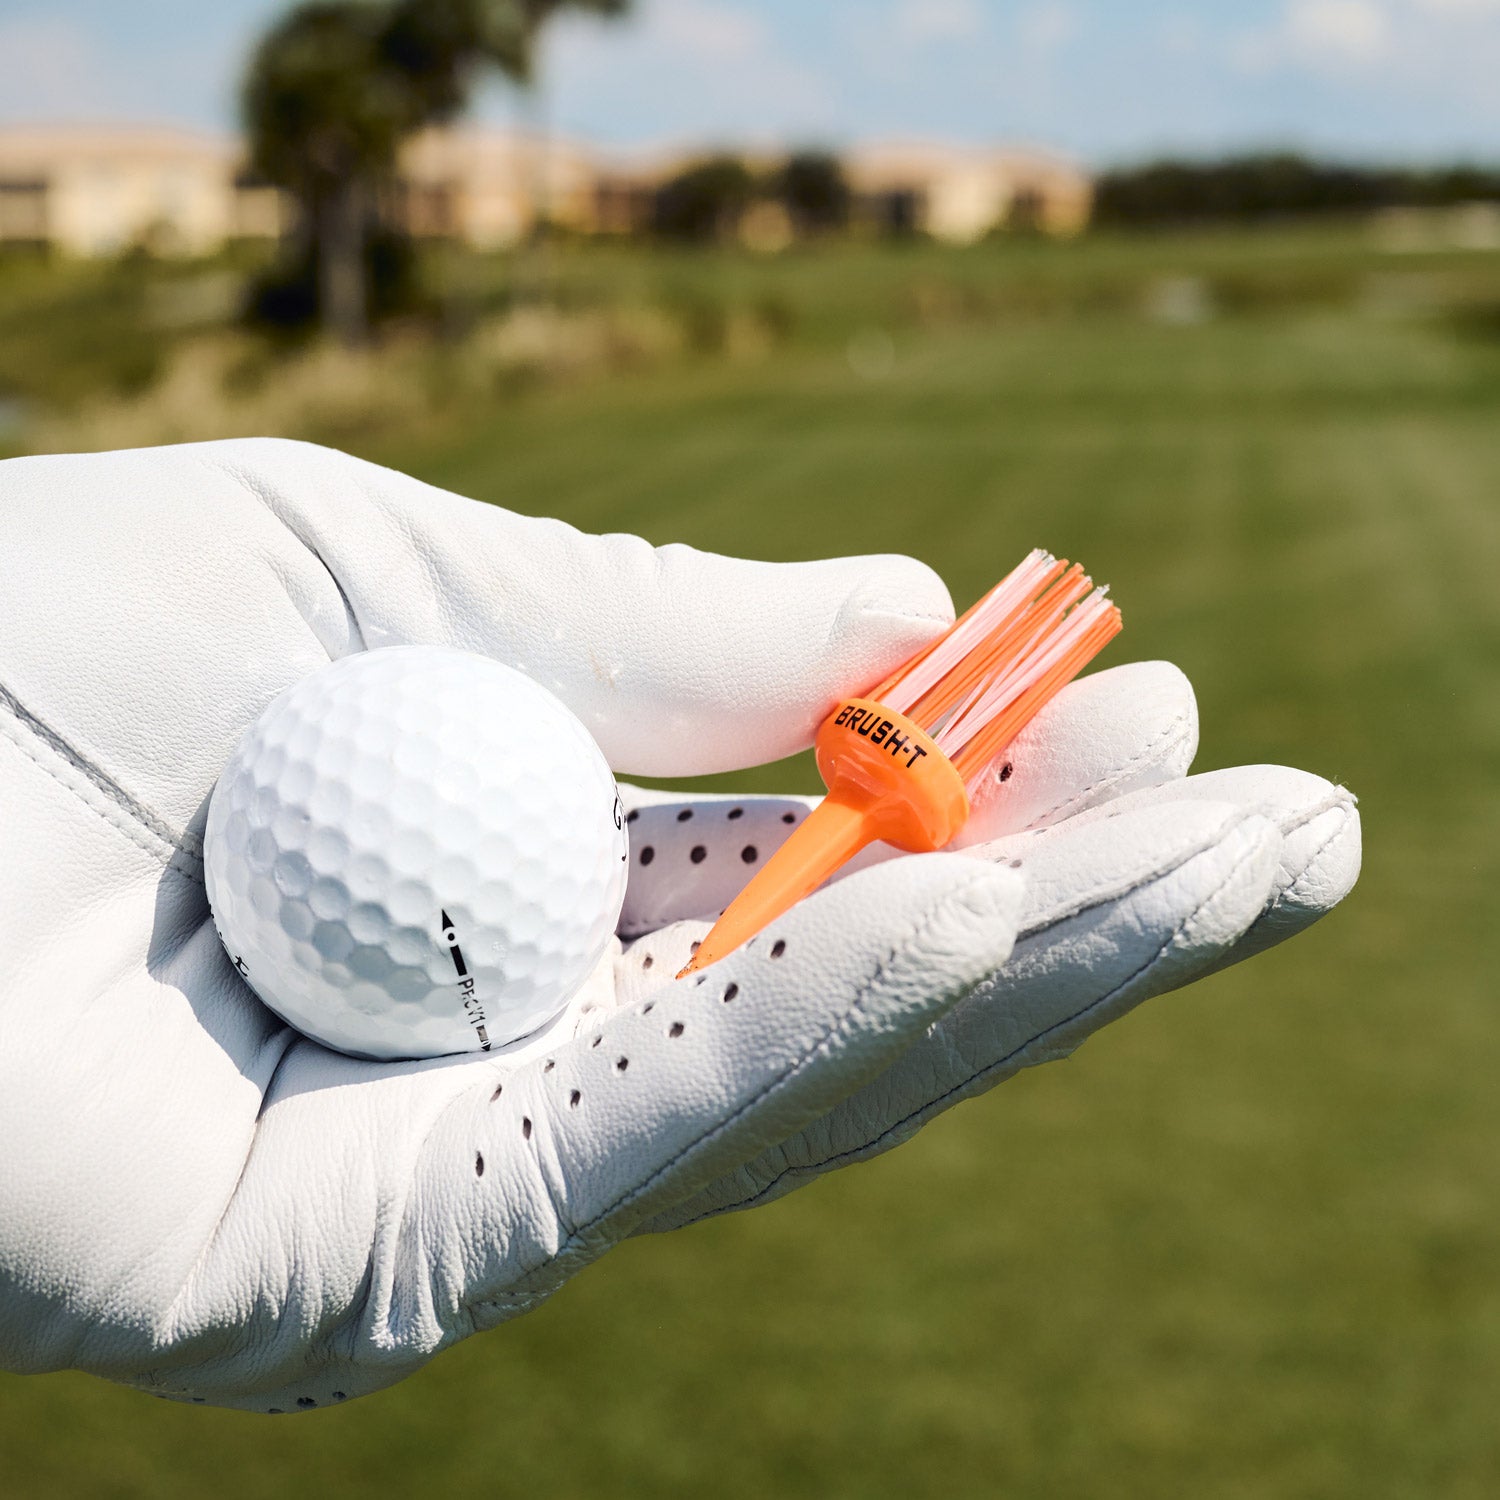 golf glove hand holding orange brush tee.